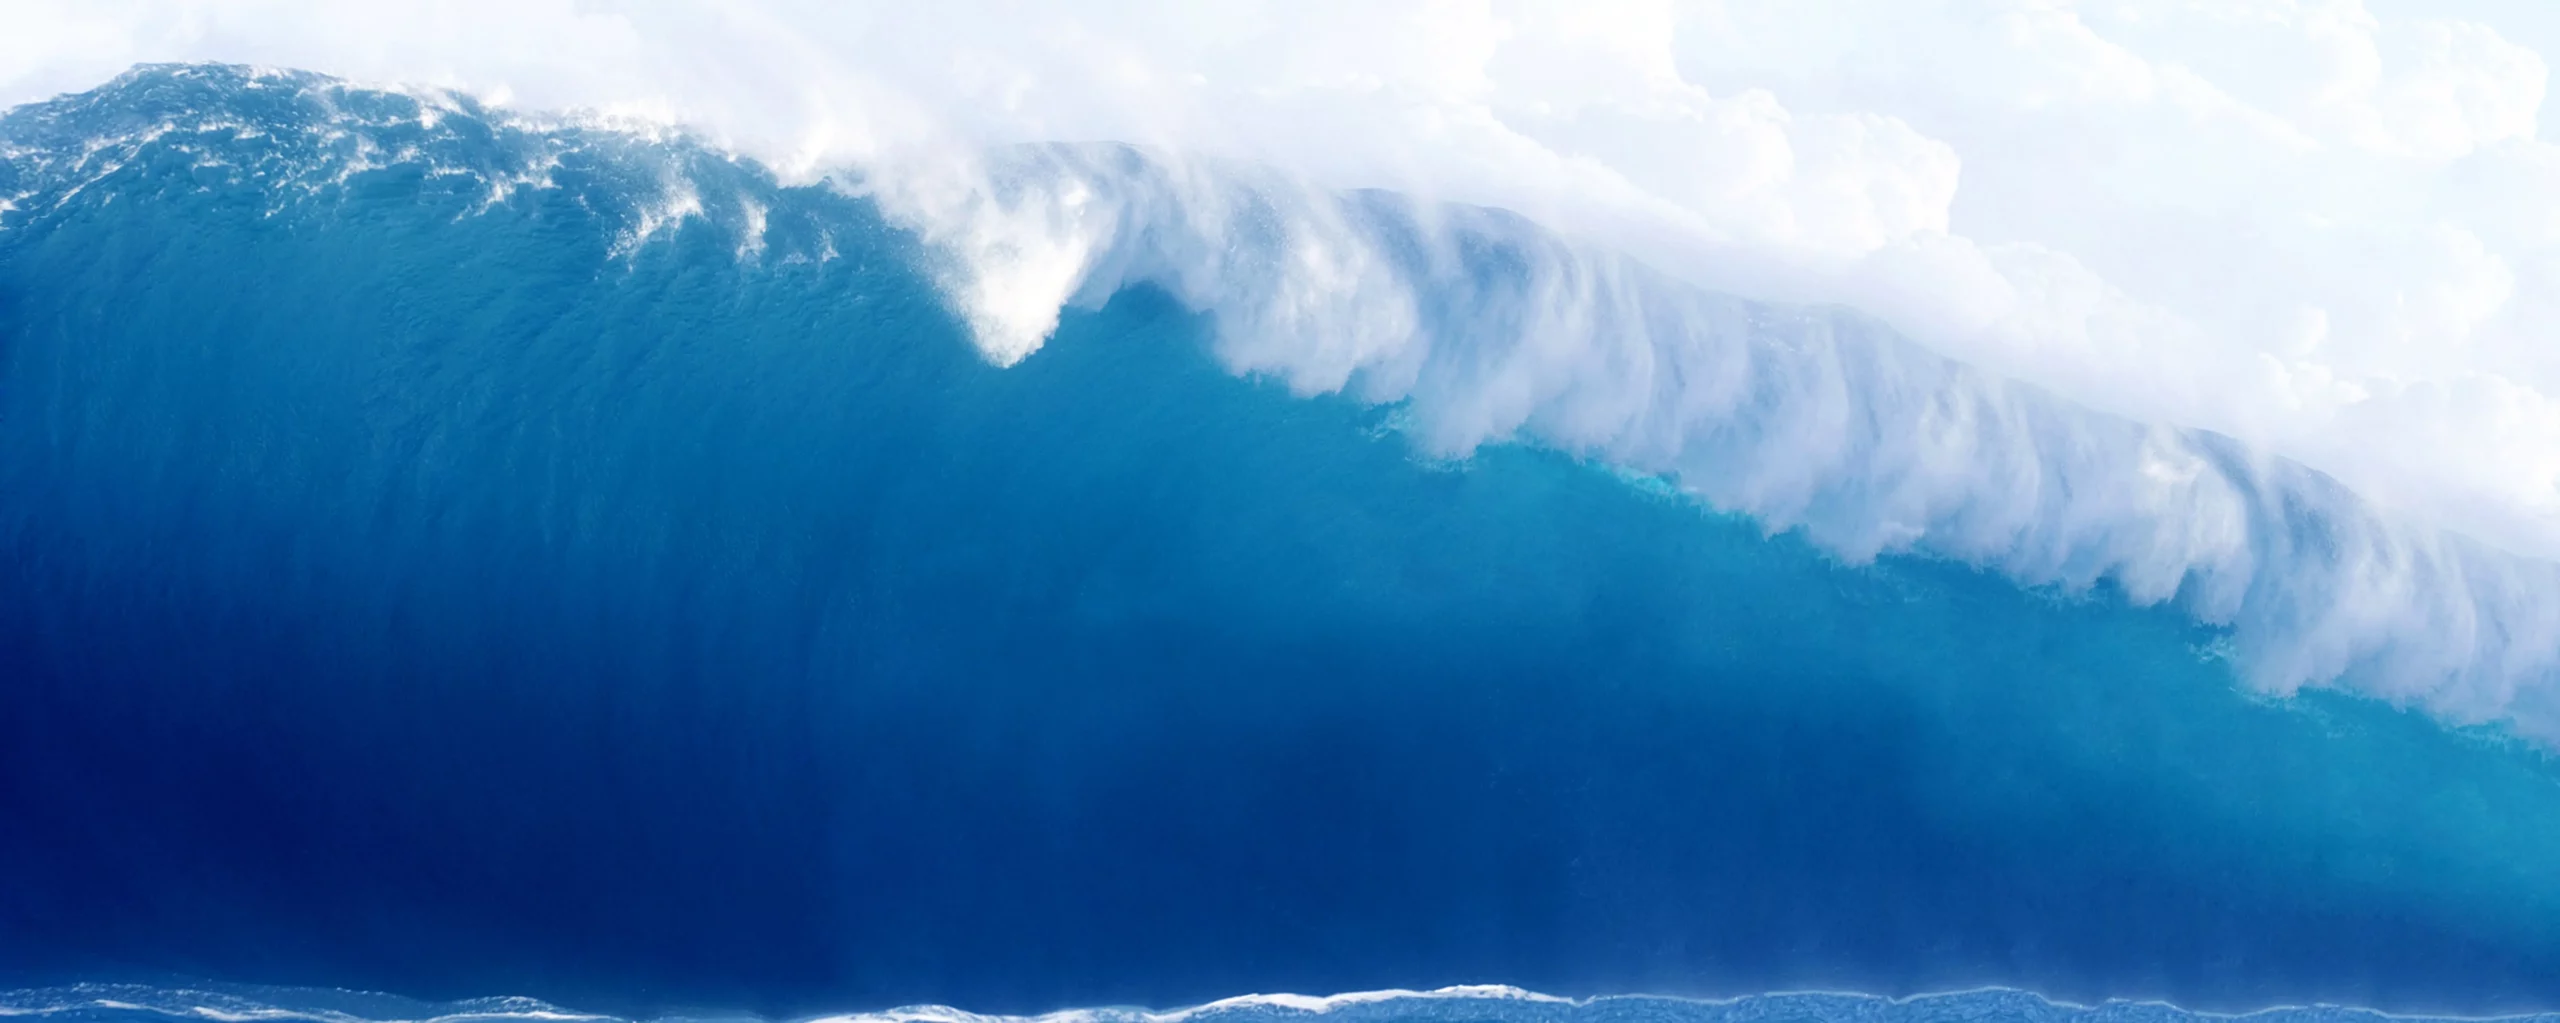 large-blue-surfing-wave-breaks-in-the-ocean-2022-10-10-21-55-48-utc-min